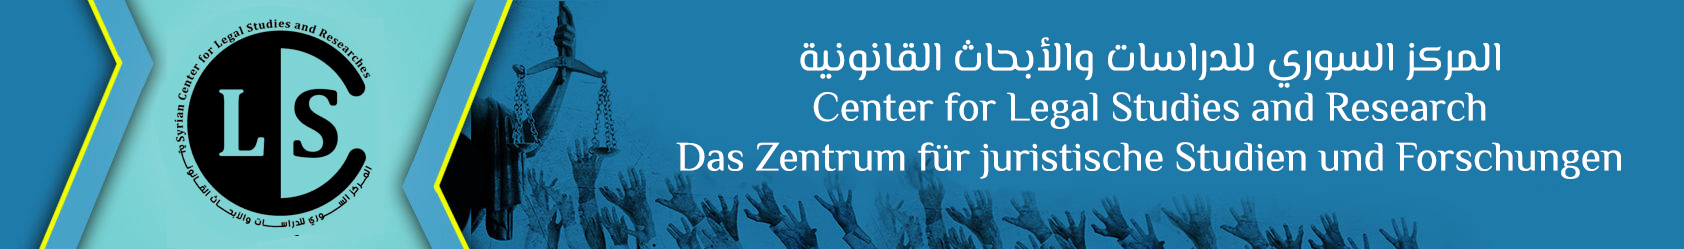 Syrisches Zentrum für Rechtswissenschaften und Forschung